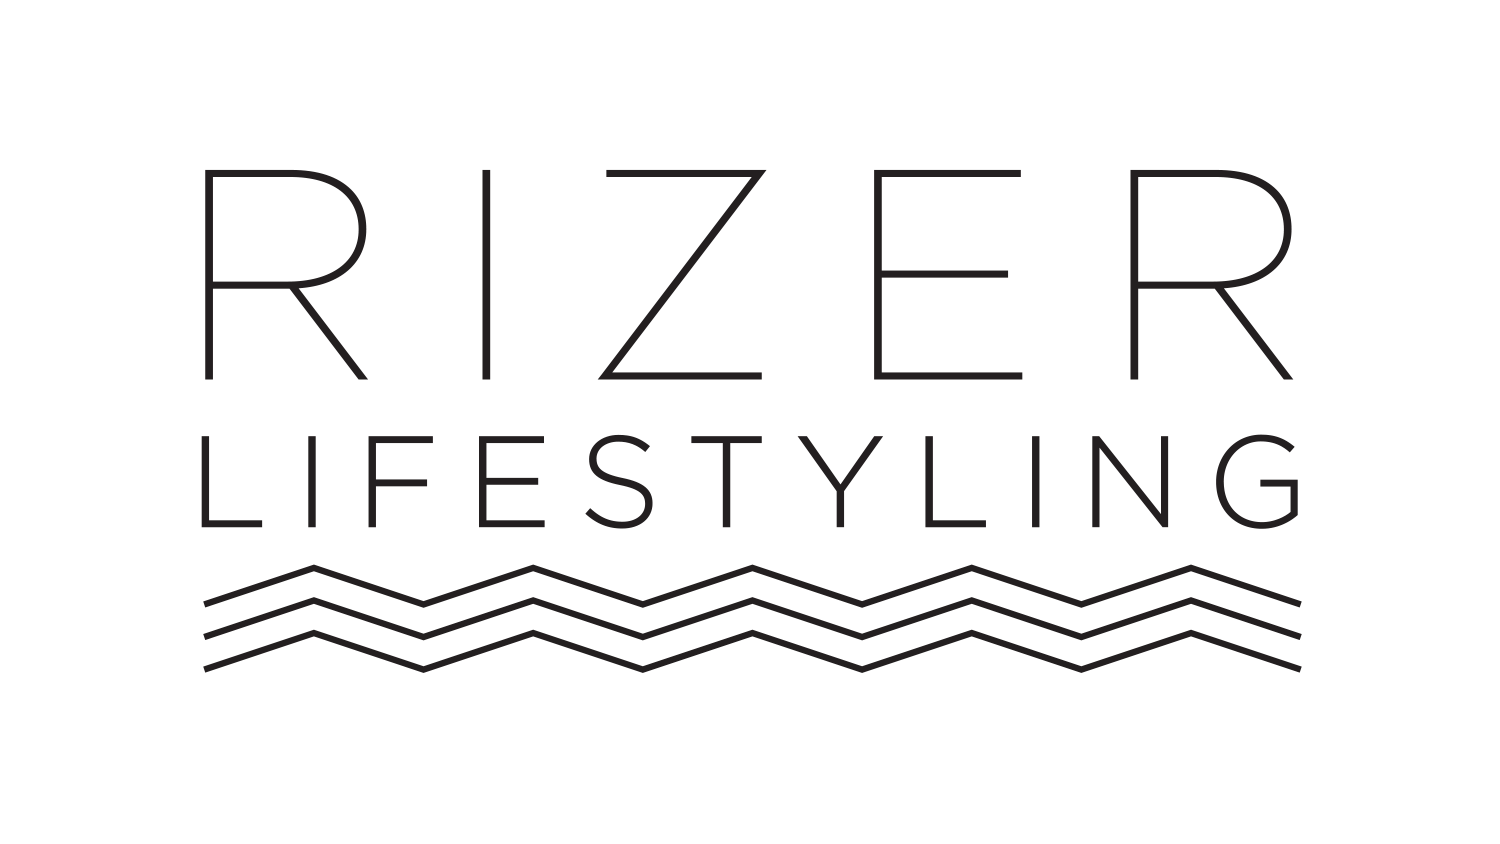 Rizer Lifestyling